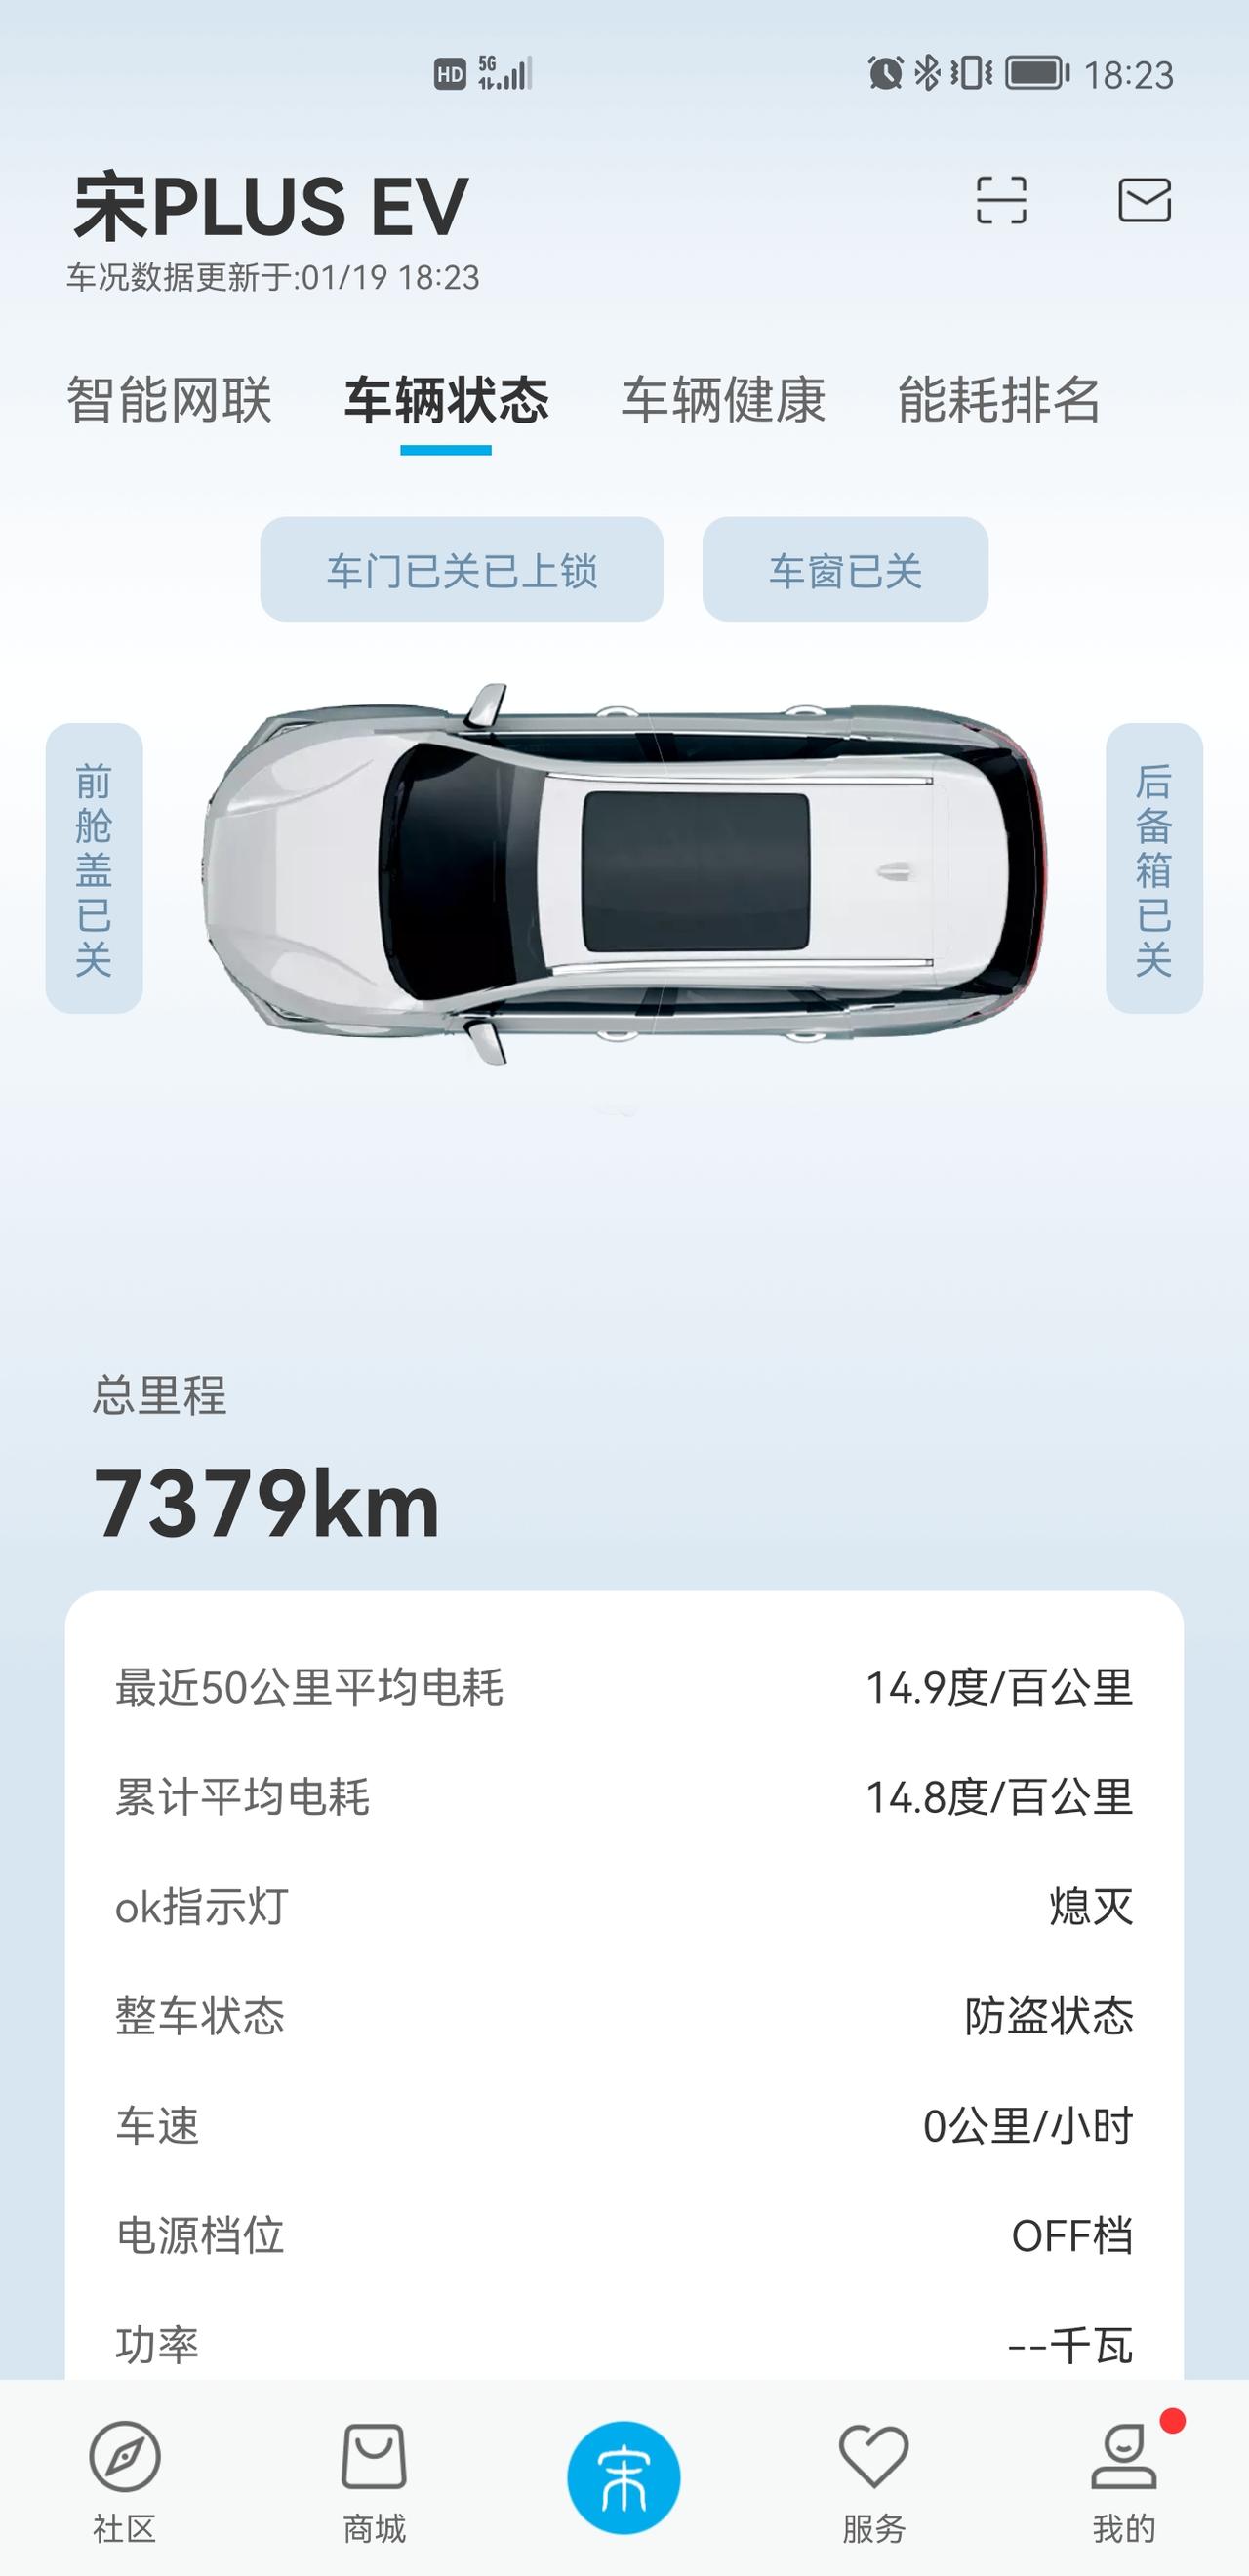 比亚迪宋PLUS EV 2021年6月提车，坐标北京。车辆问题是入冬后早晨冷车启动，倒车时轻踩刹车右后轮附近传出较大声音